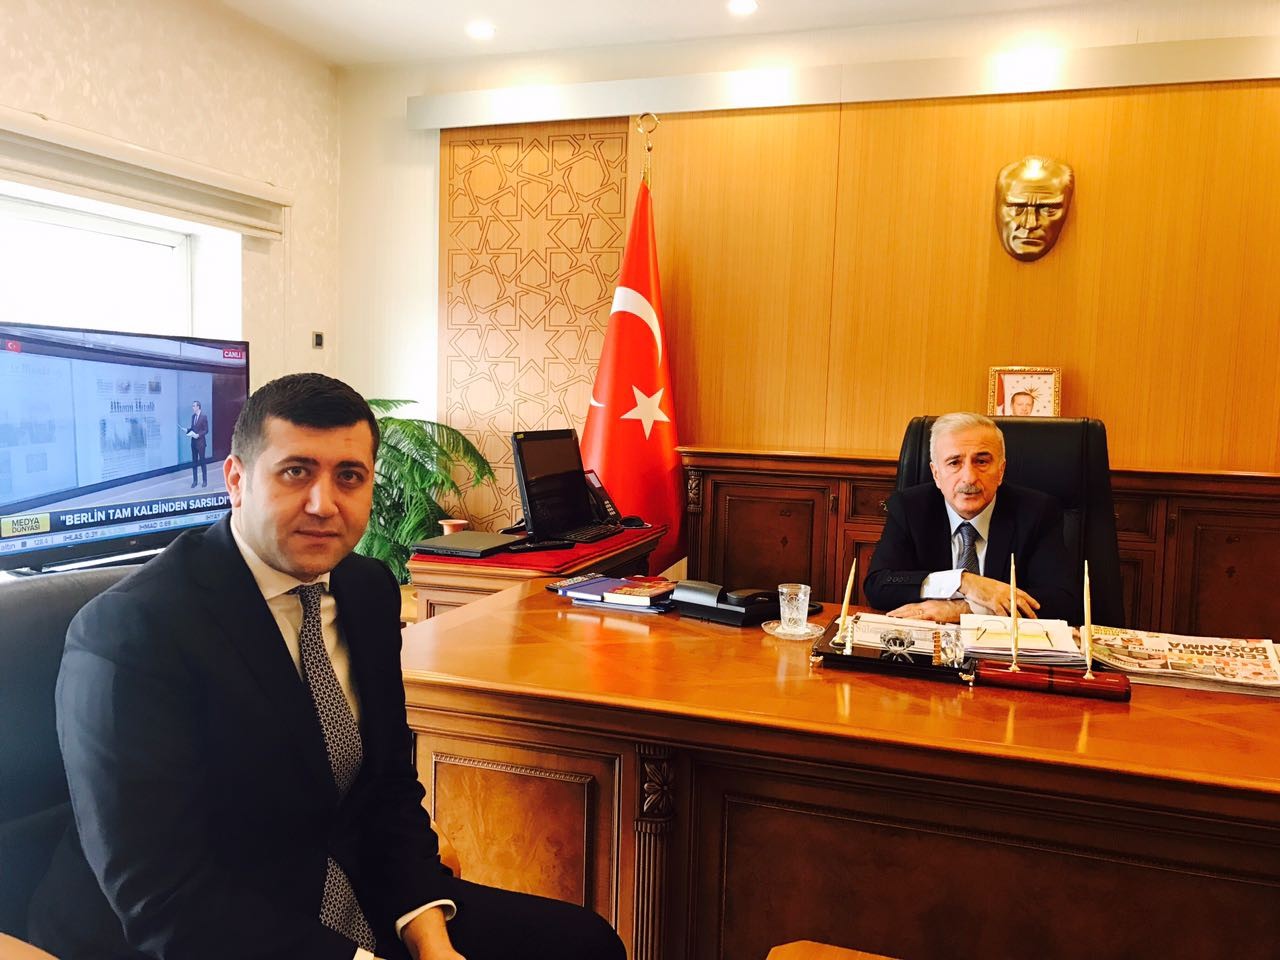 MHP İl Başkanı Ersoy: “Devletimizin yanındayız”